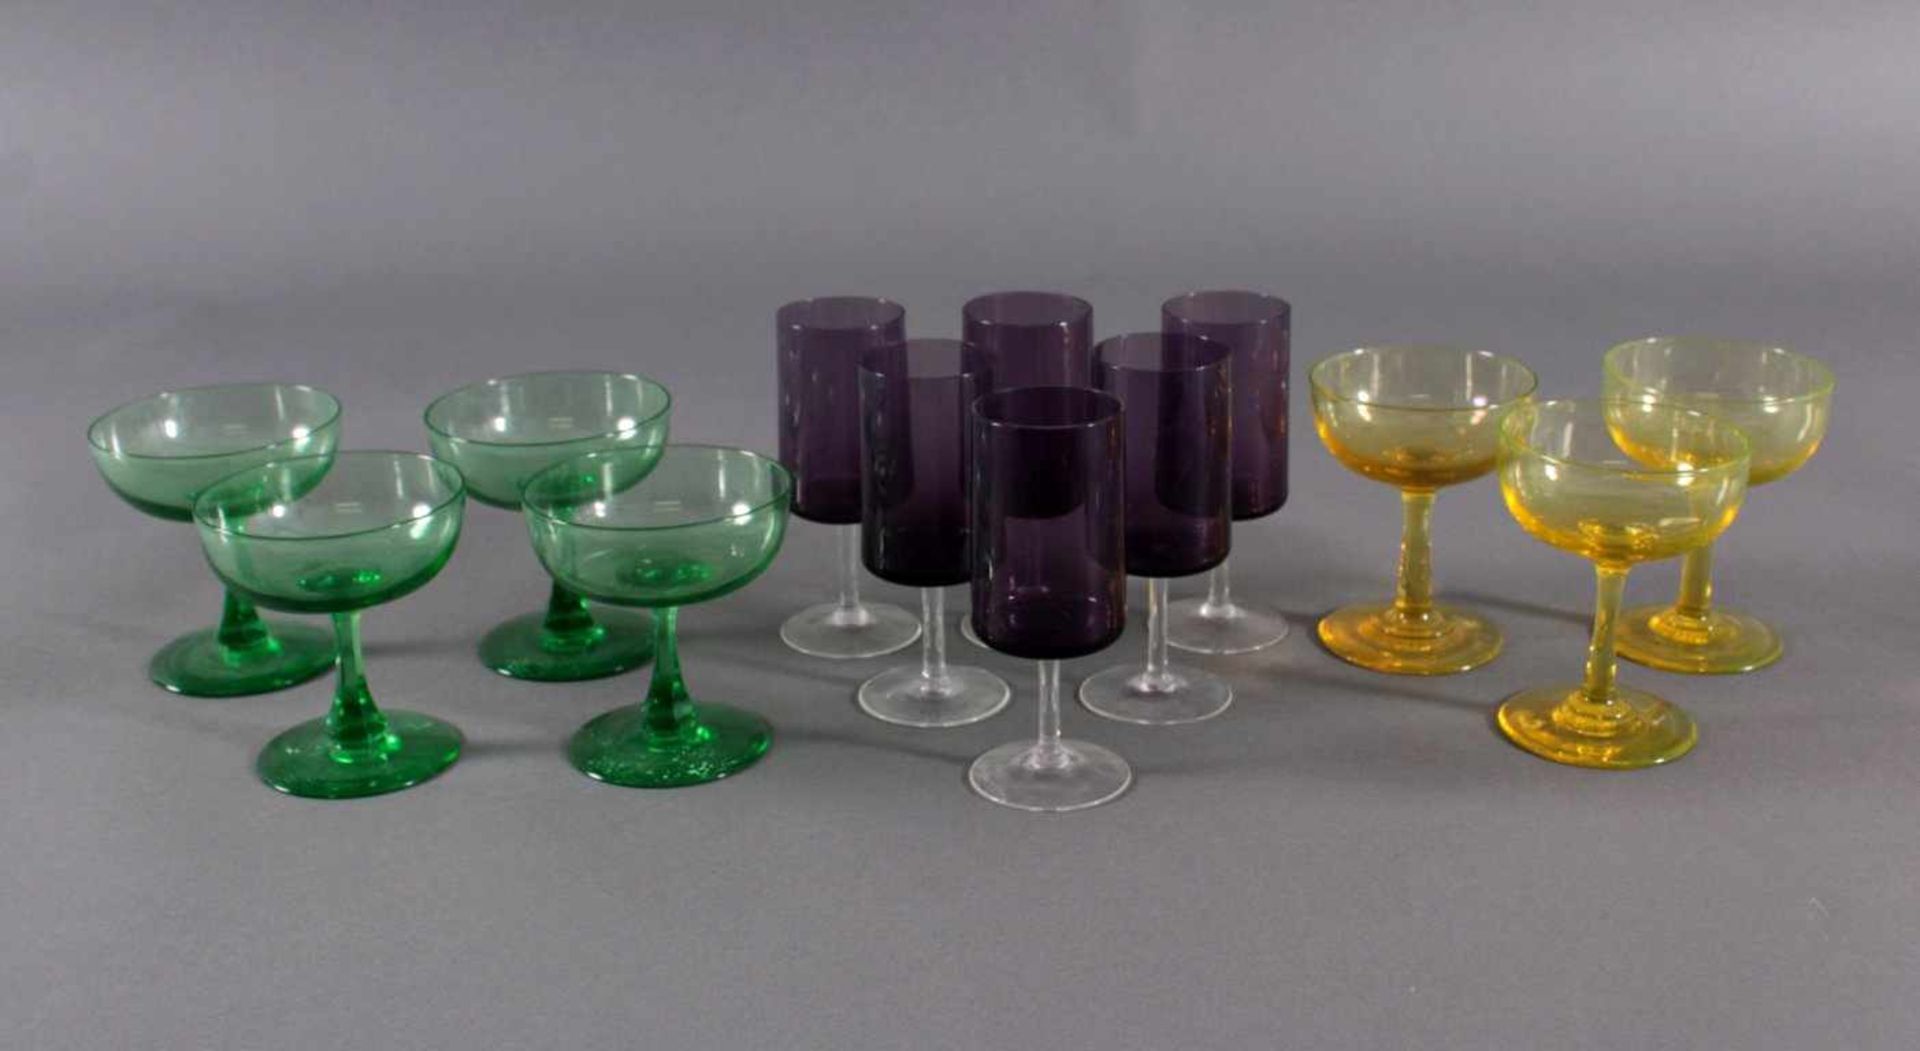 Trinkgläser, 13 StückKristallglas, 6 Weingläser, farbloses Glas lila überfangen.4 Sektschalen